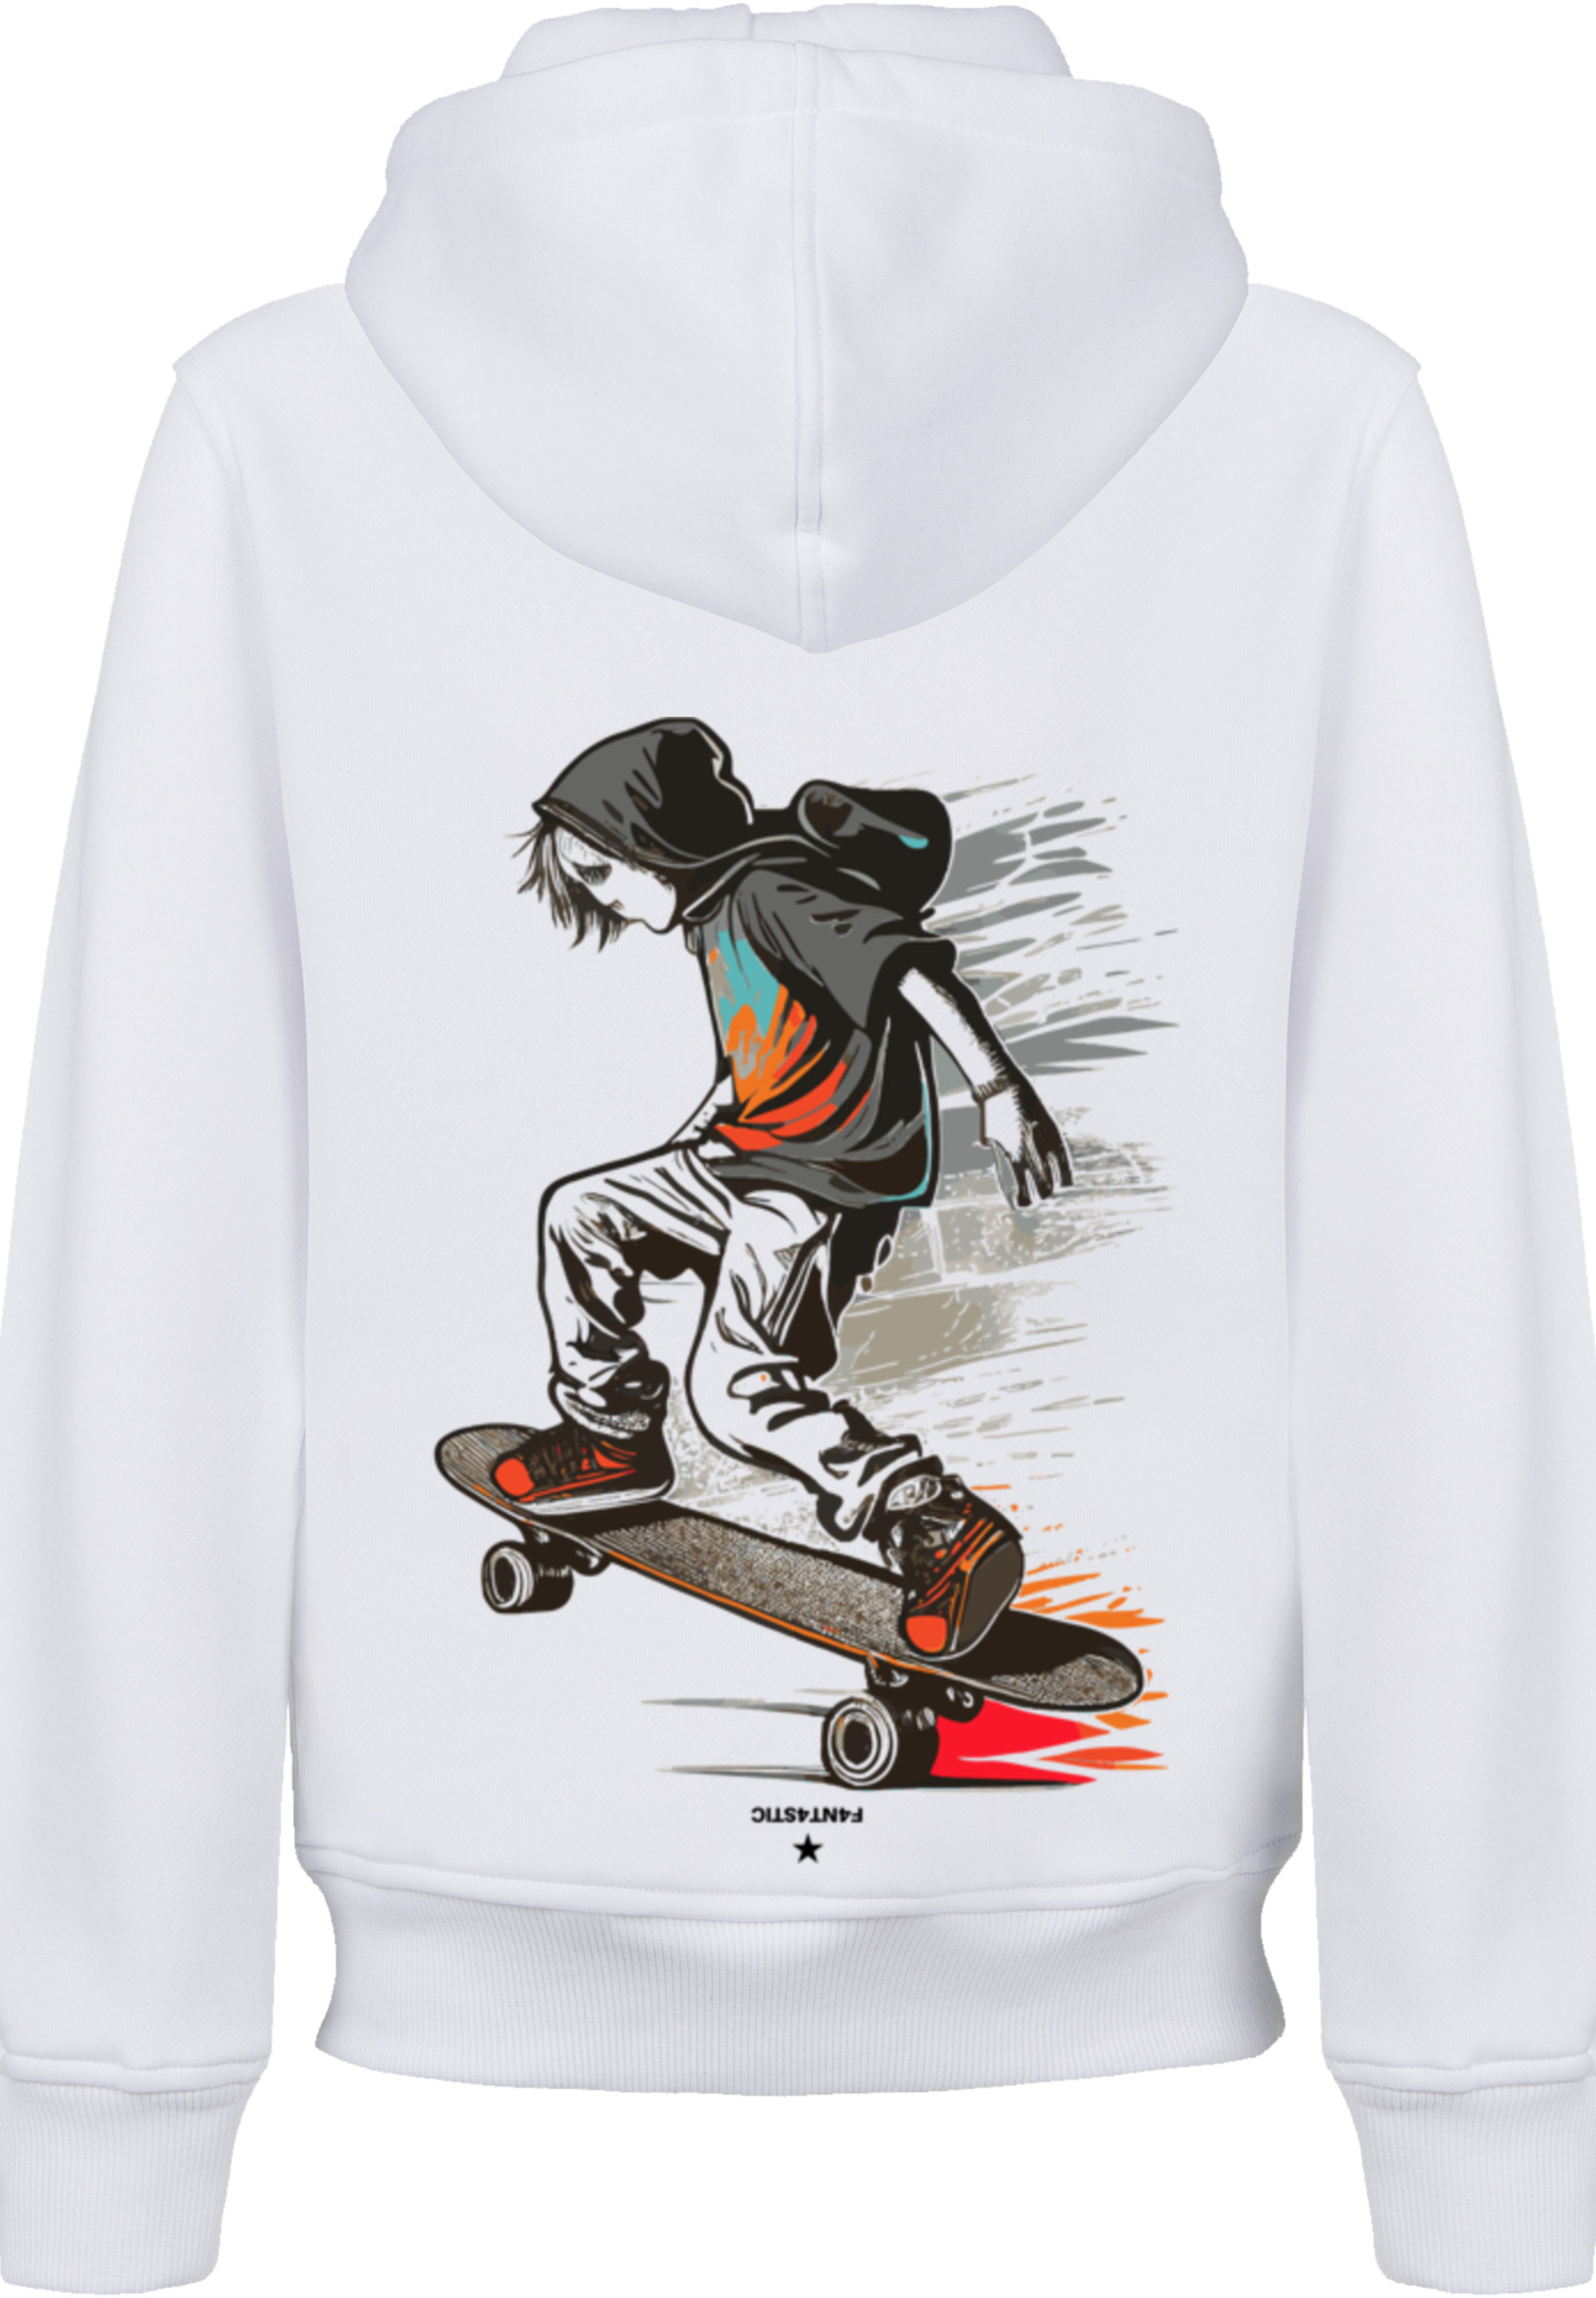 Пуловер F4NT4STIC Hoodie Skateboarder, белый